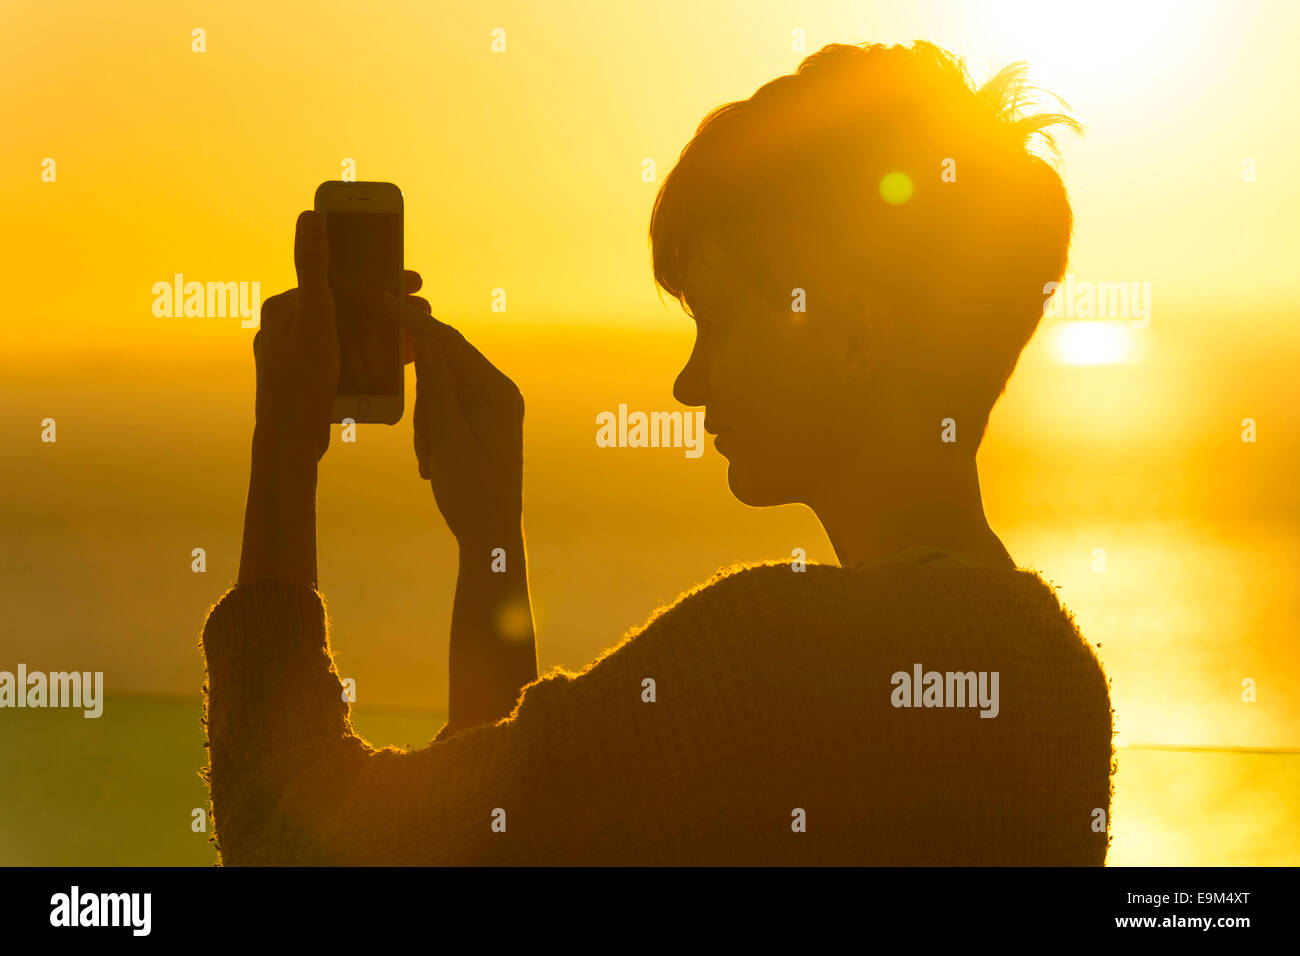 Una mujer usa un teléfono móvil en una red de roaming extranjeros mientras se encuentra de vacaciones durante la puesta de sol del amanecer. Foto de stock